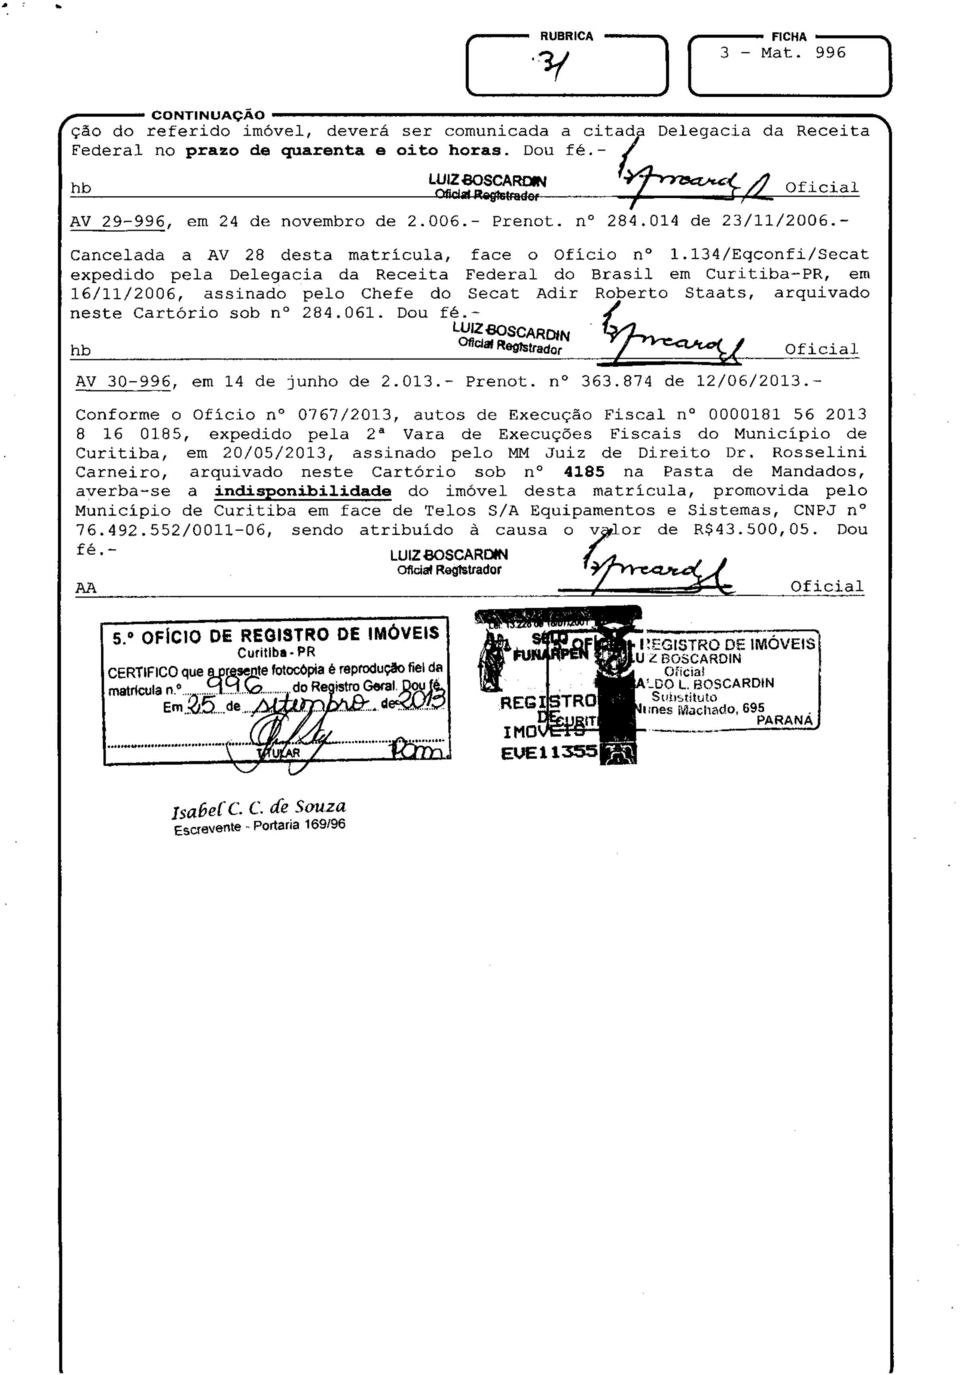 134/eqconfi/secat expedido pela Delegacia da Receita Federal do Brasil em Curitiba~PR, em 16/11/2006, assinado pelo Chefe do Secat Adir Roberto Staats, arquivado neste Cartório sob n 284.061.